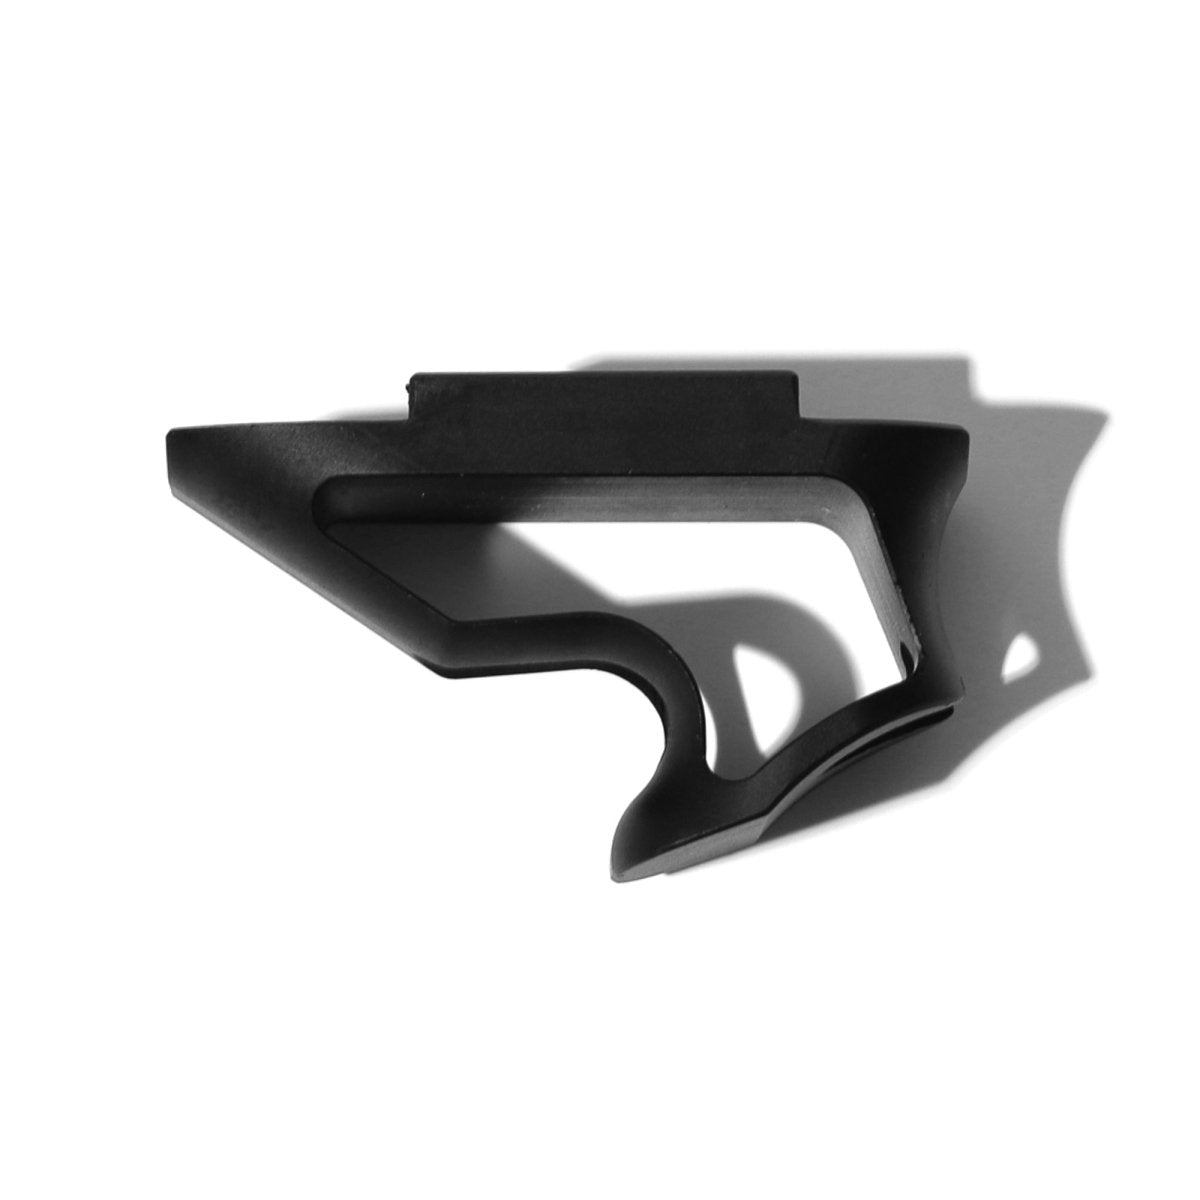 EMERBU Metal Small F-Shaped Froegrip for Picatinny Rail(Black) - EmerbutoysEmerbutoys